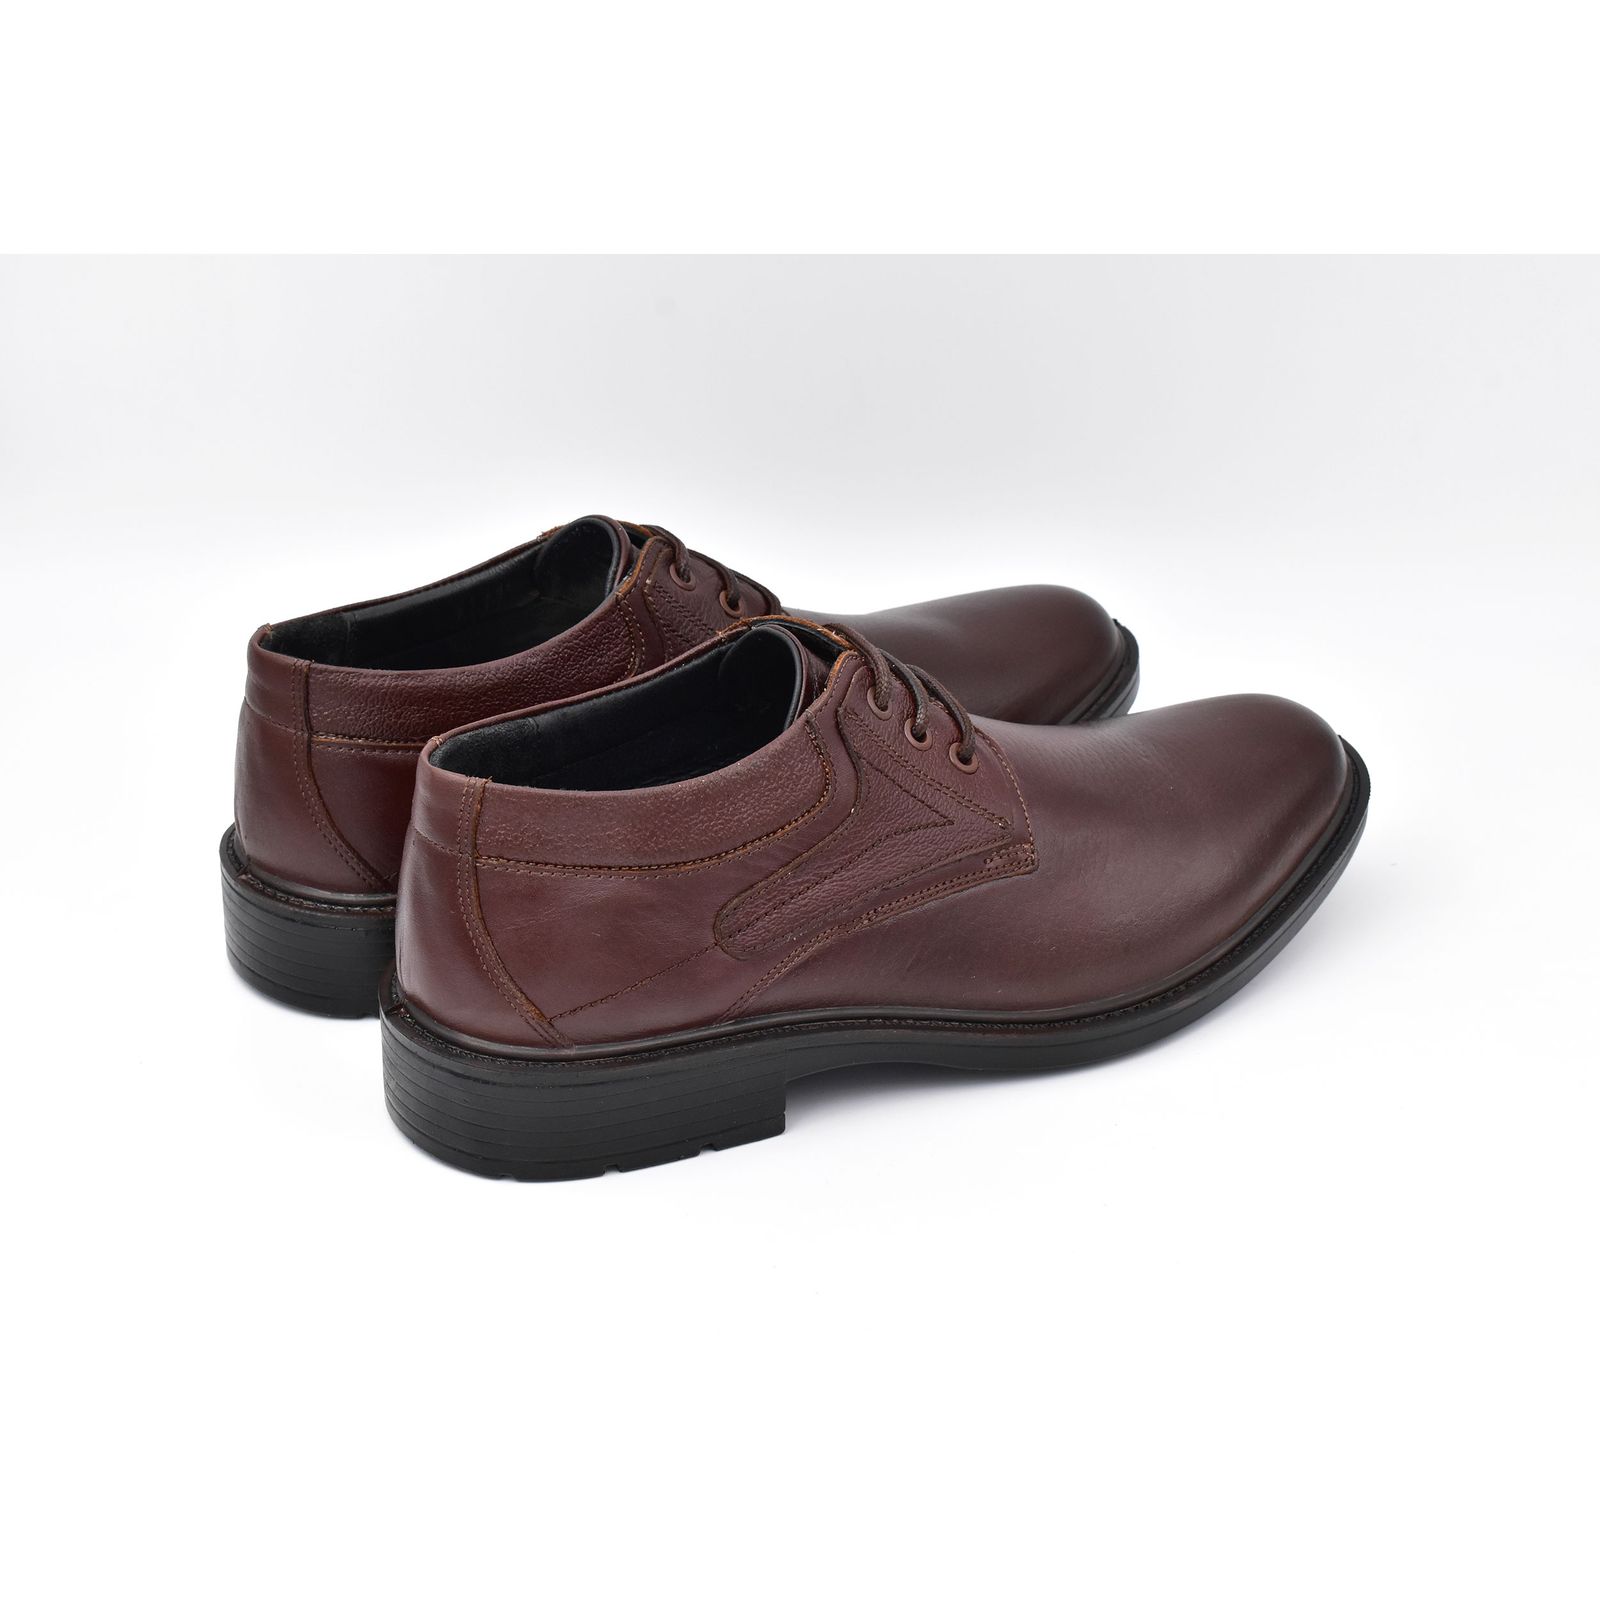 کفش مردانه پاما مدل Morano کد G1186 -  - 5